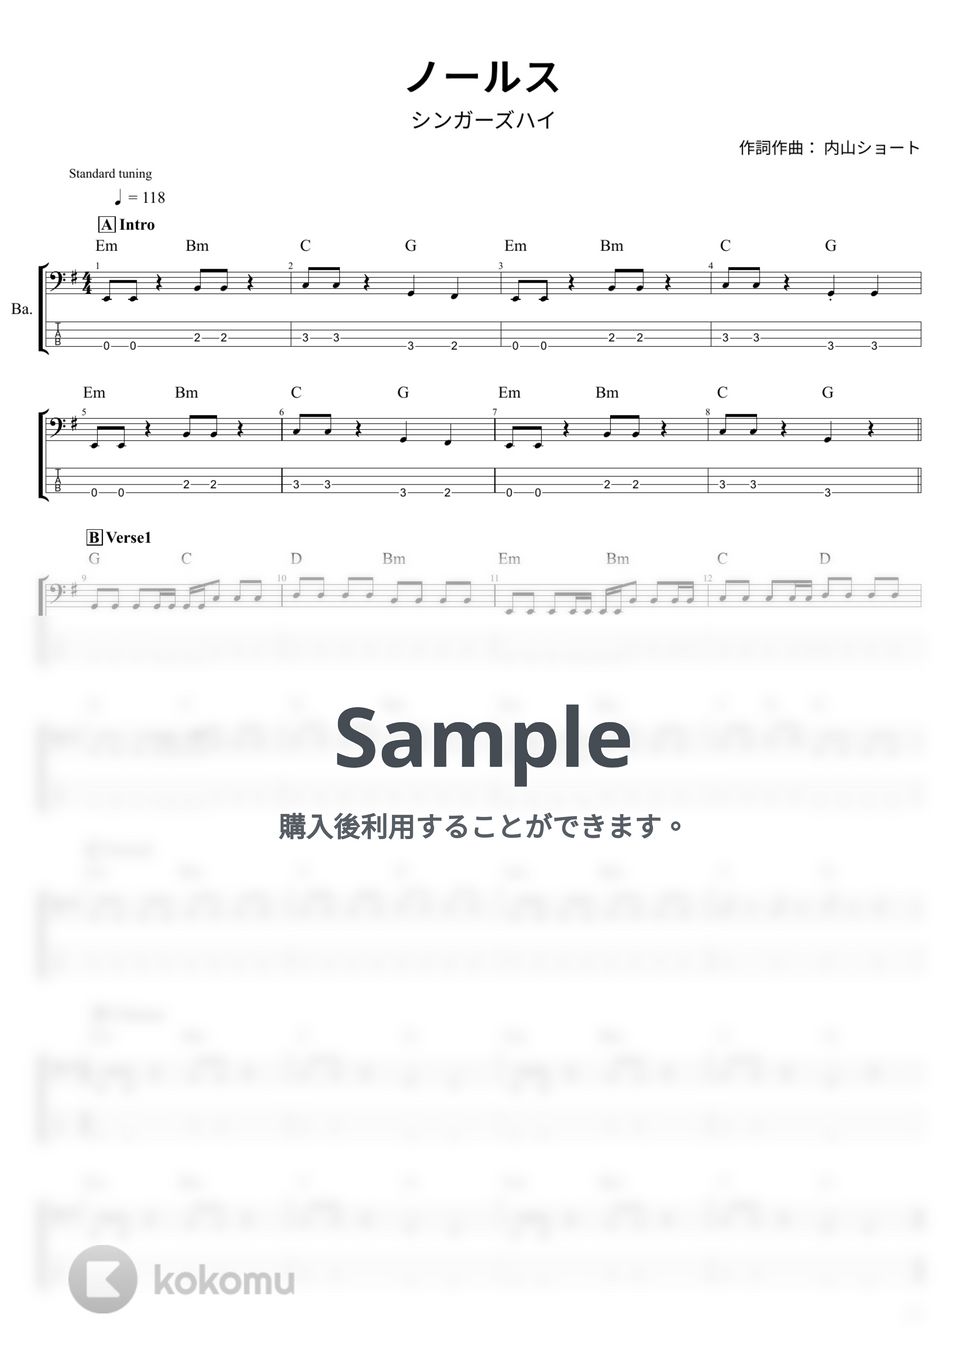 シンガーズハイ - ノールス (ベース Tab譜 4弦) by T's bass score